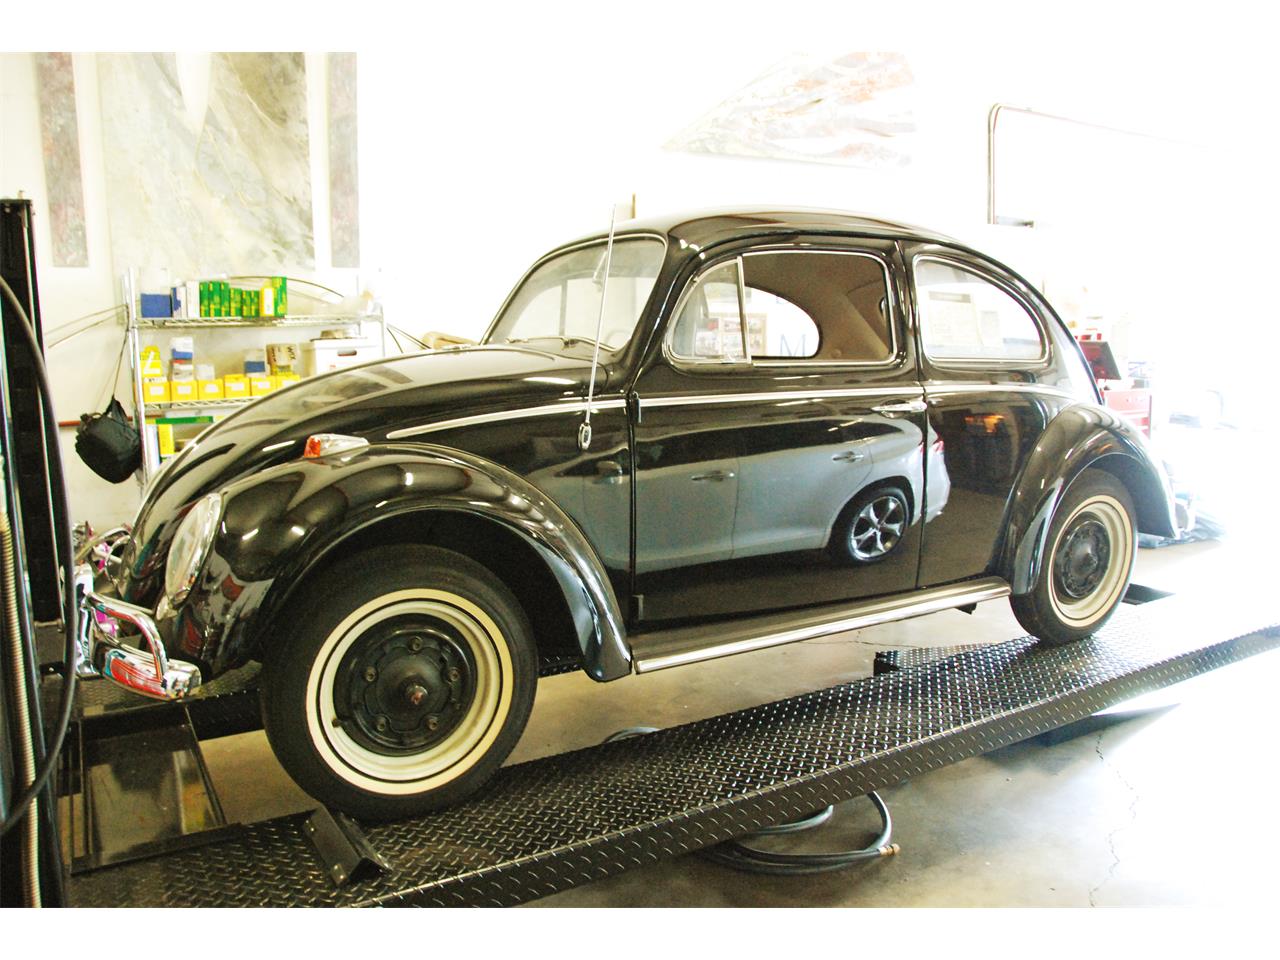 Volkswagen Fusca 1964. Foto: Reprodução - Classiccars.com